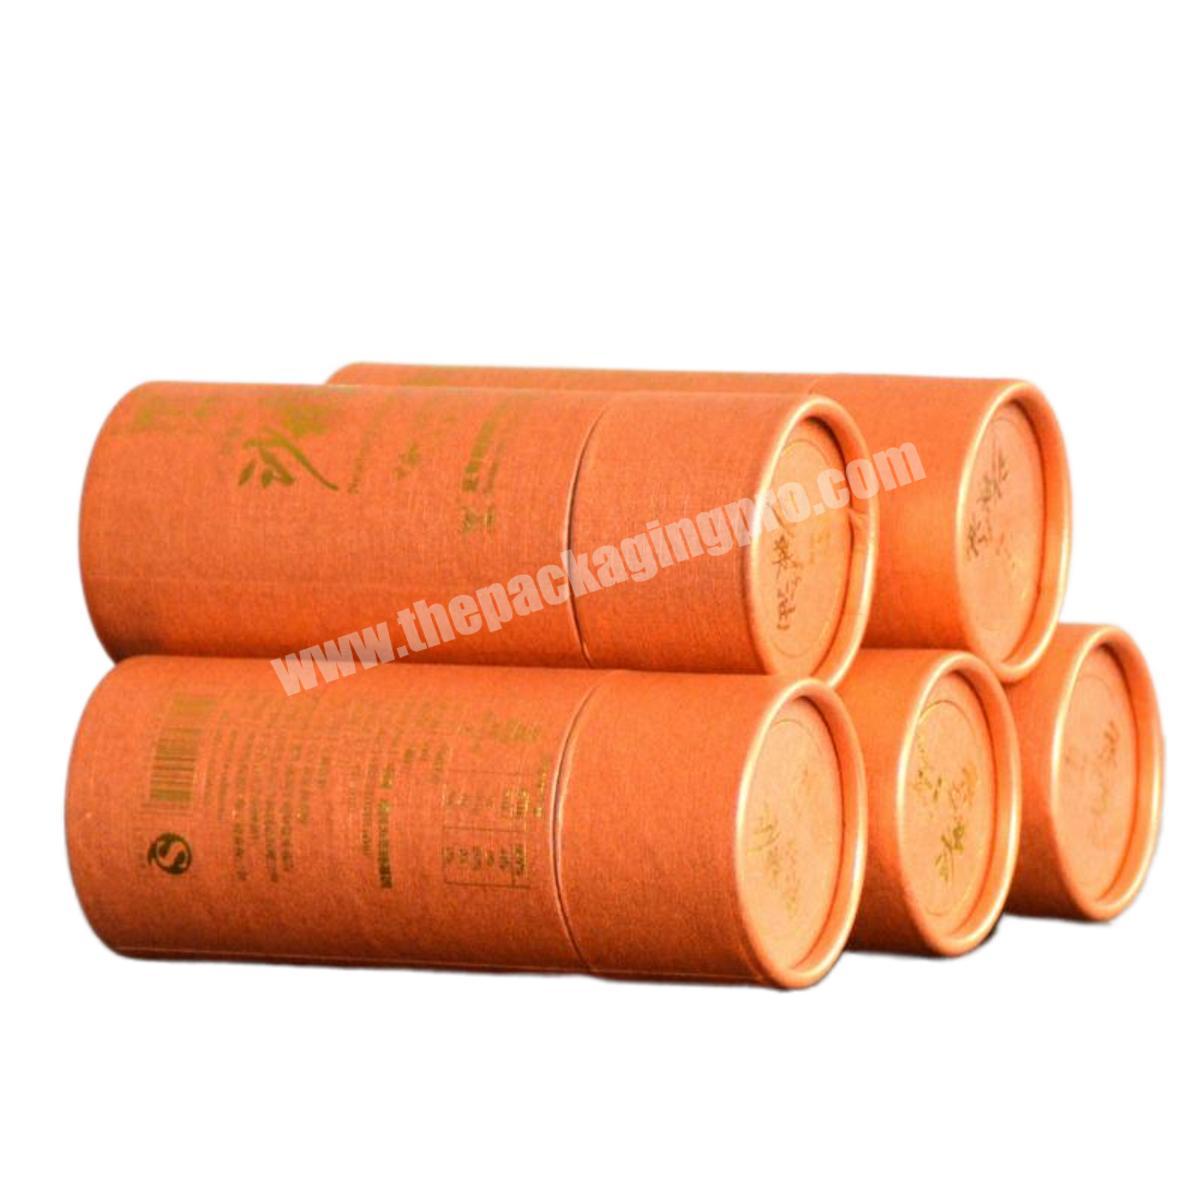 Custom Food grade cardboard printed kraft paper tube for capsicol oil food packaging